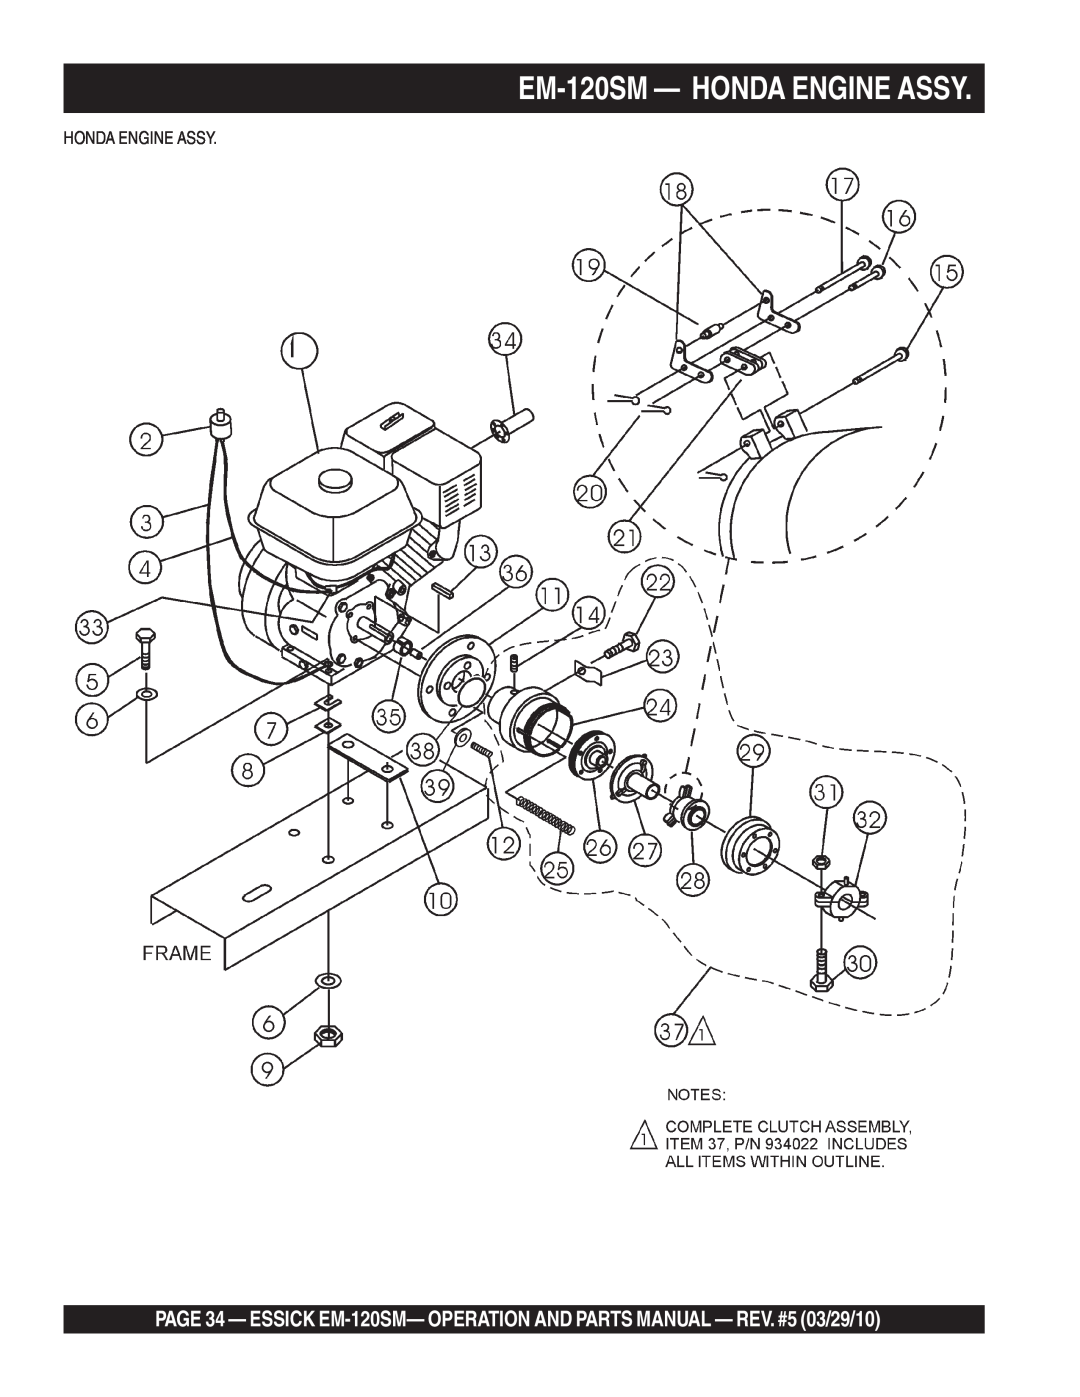 Multiquip manual EM-120SM- HONDA ENGINE ASSY, Honda Engine Assy 